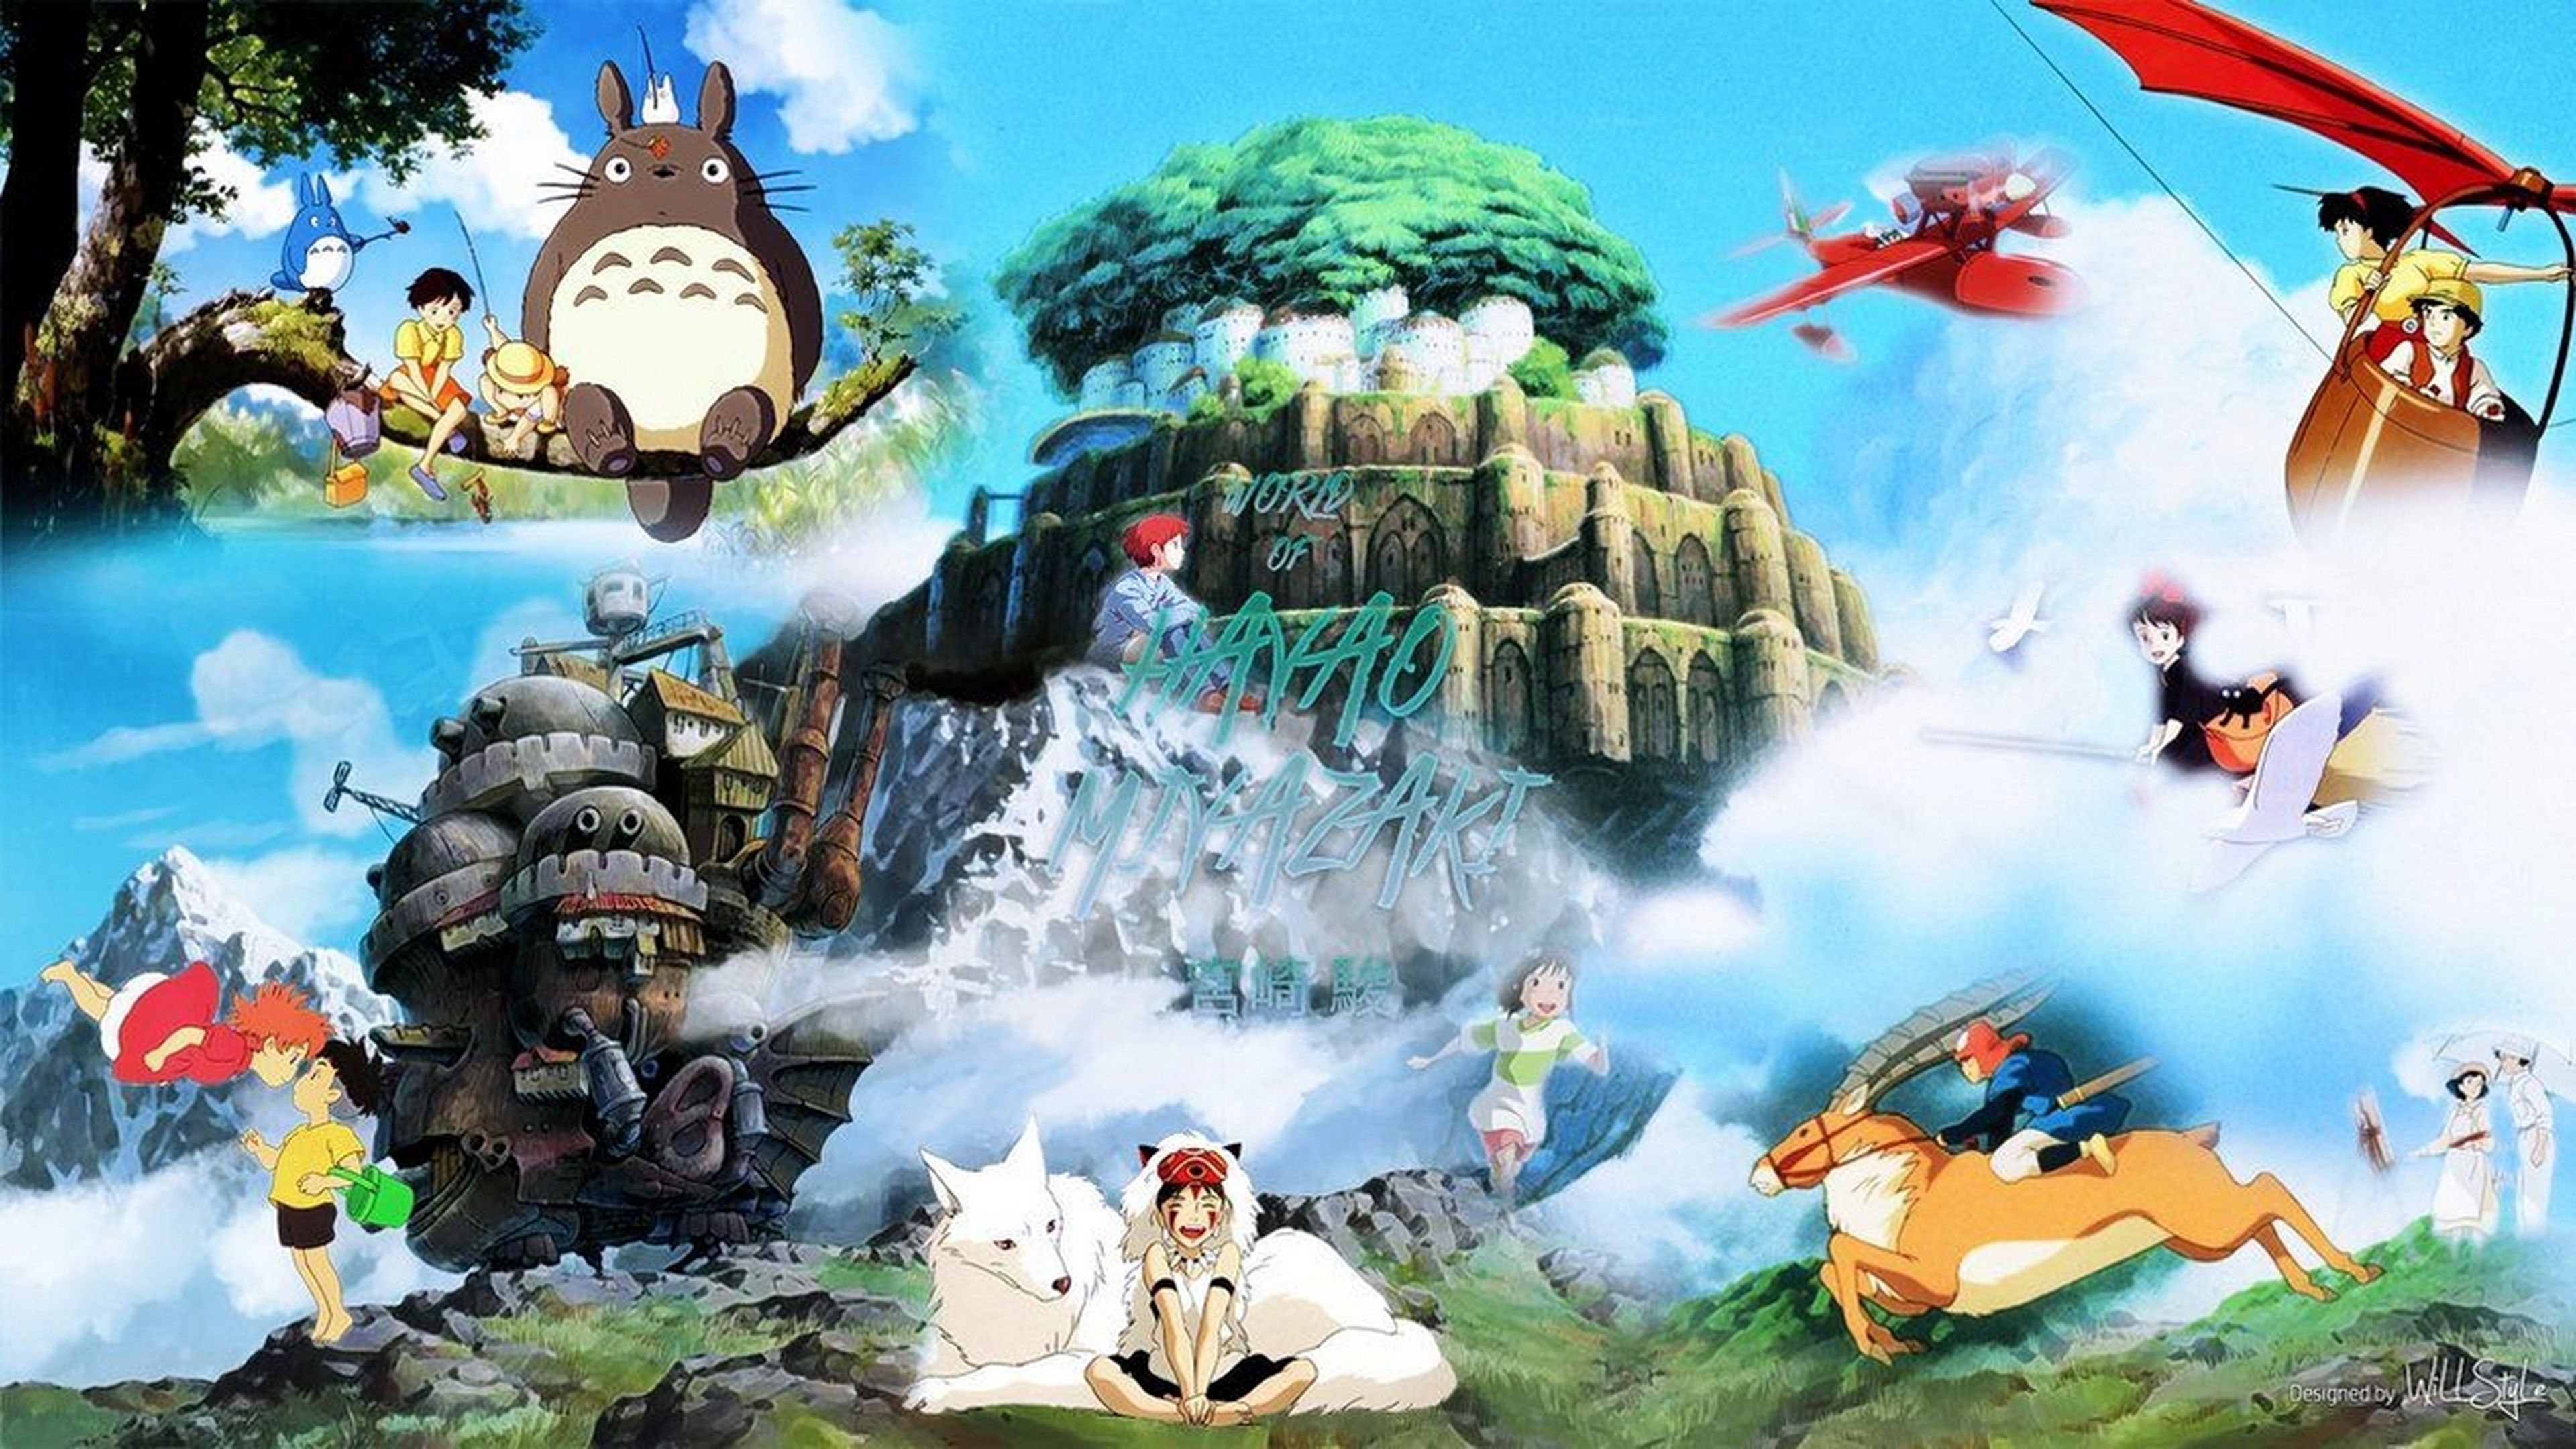 ¿Estás estresado? Este vídeo relajante del Studio Ghibli solo con imágenes y sonido ambiente te dejará nuevo